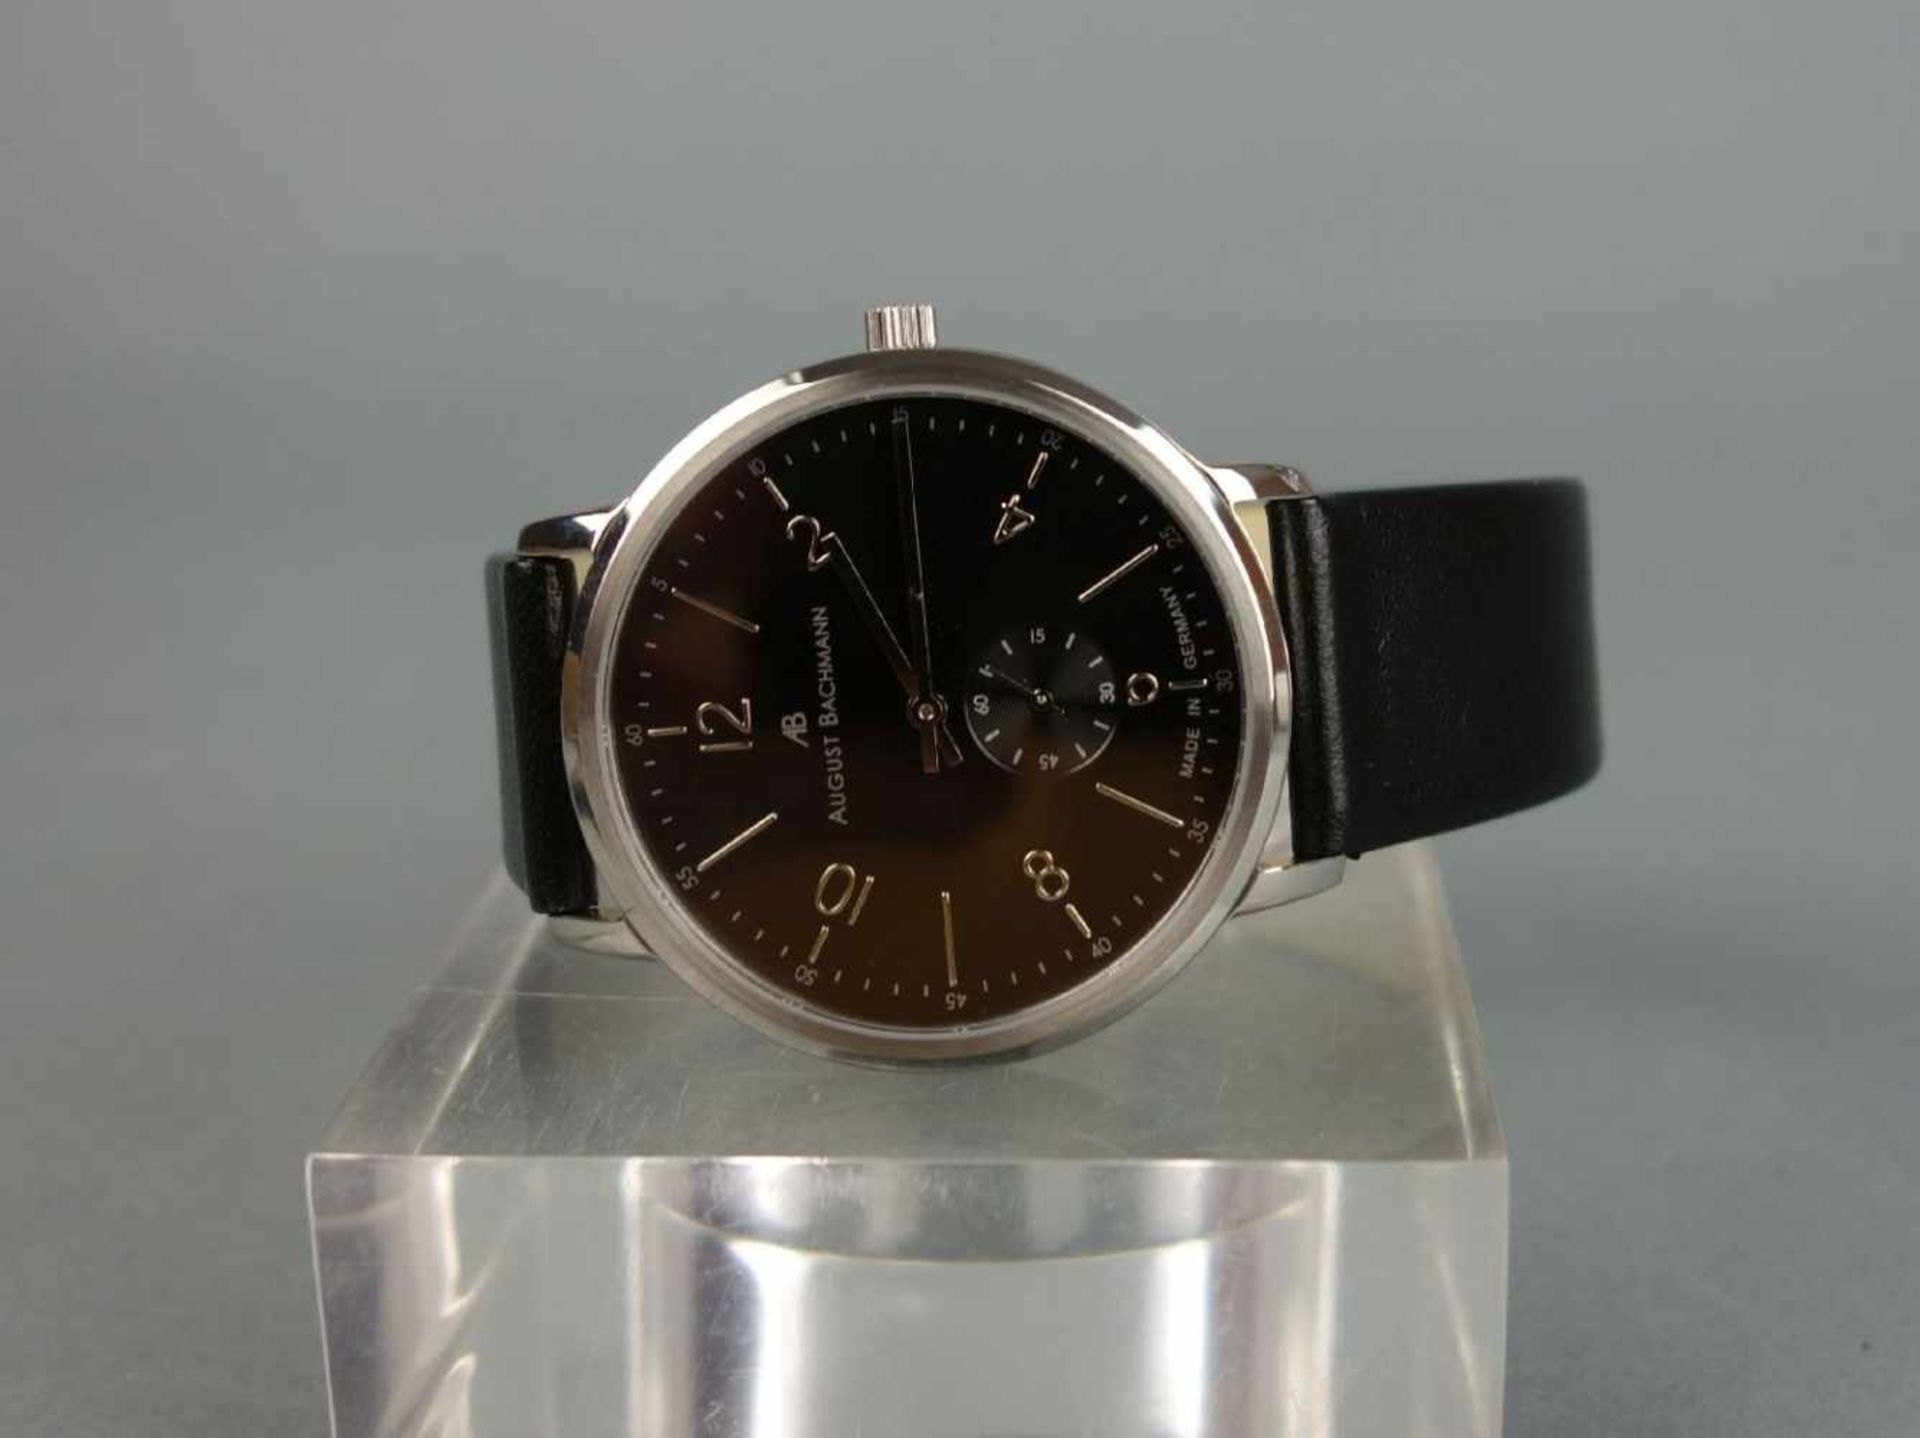 ARMBANDUHR / wristwatch, Quarz-Uhr, Manufaktur August Bachmann / Deutschland. Modell "10101.35.